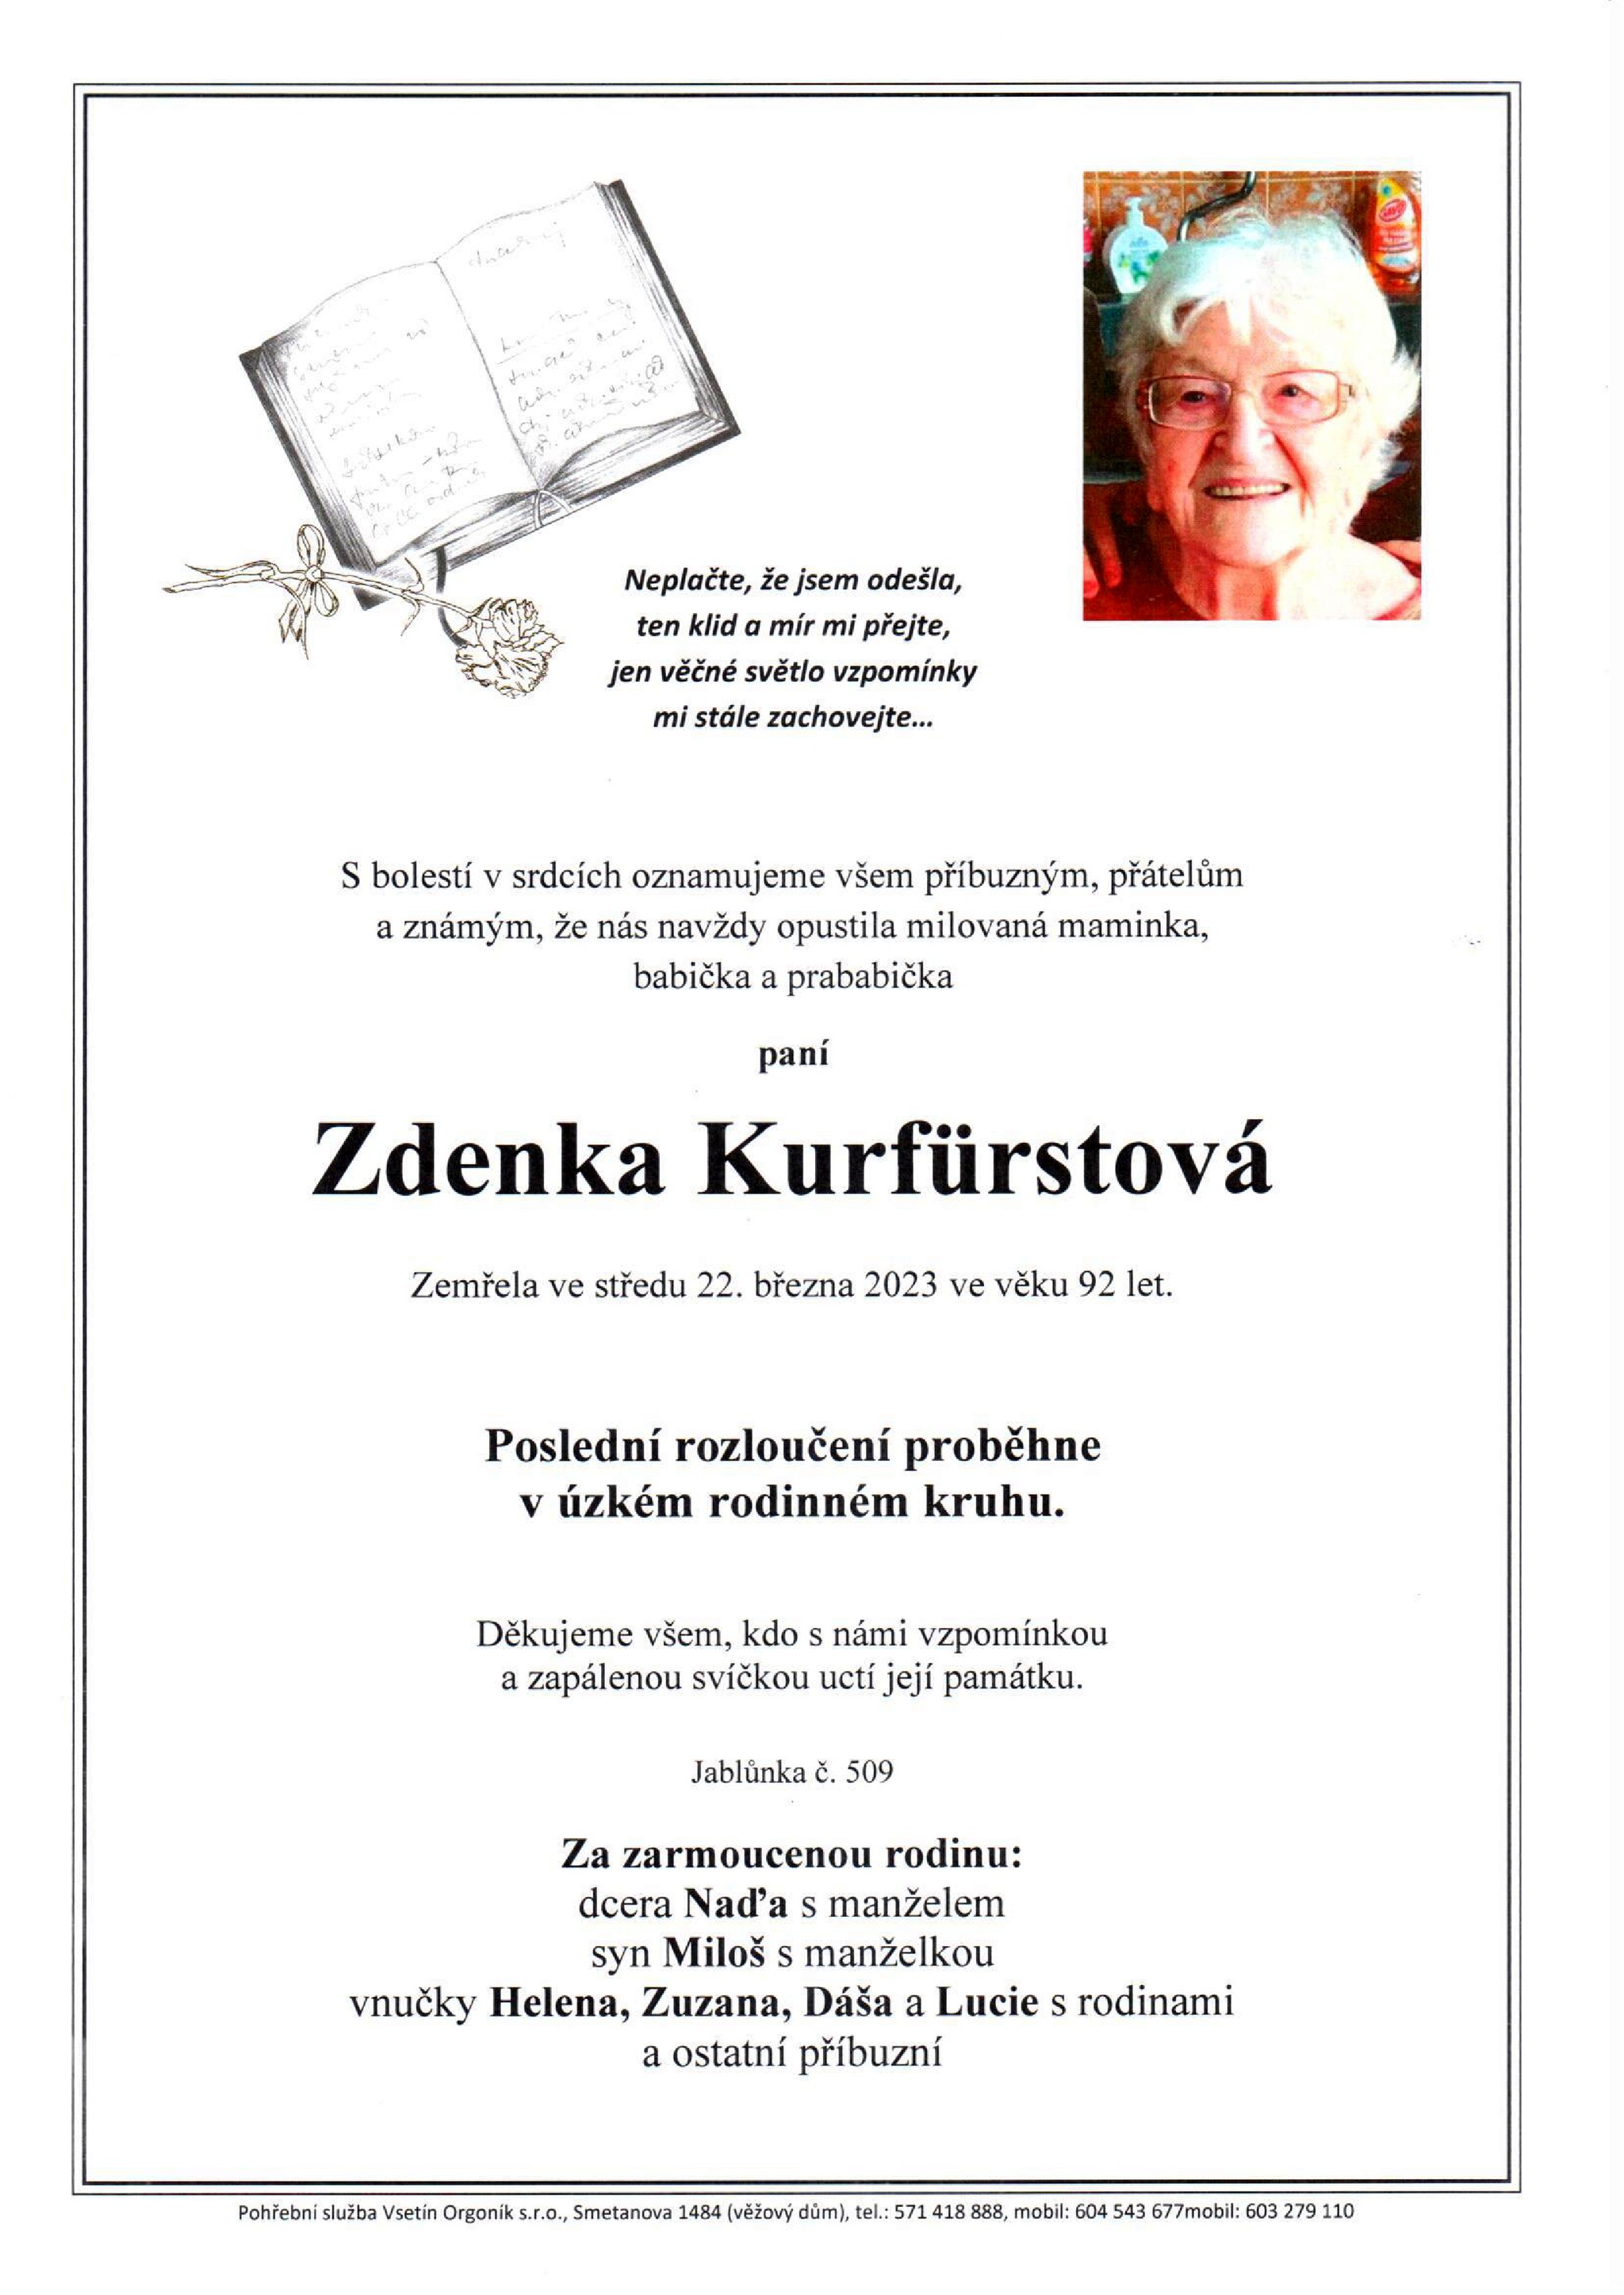 Zdenka Kurfürstová